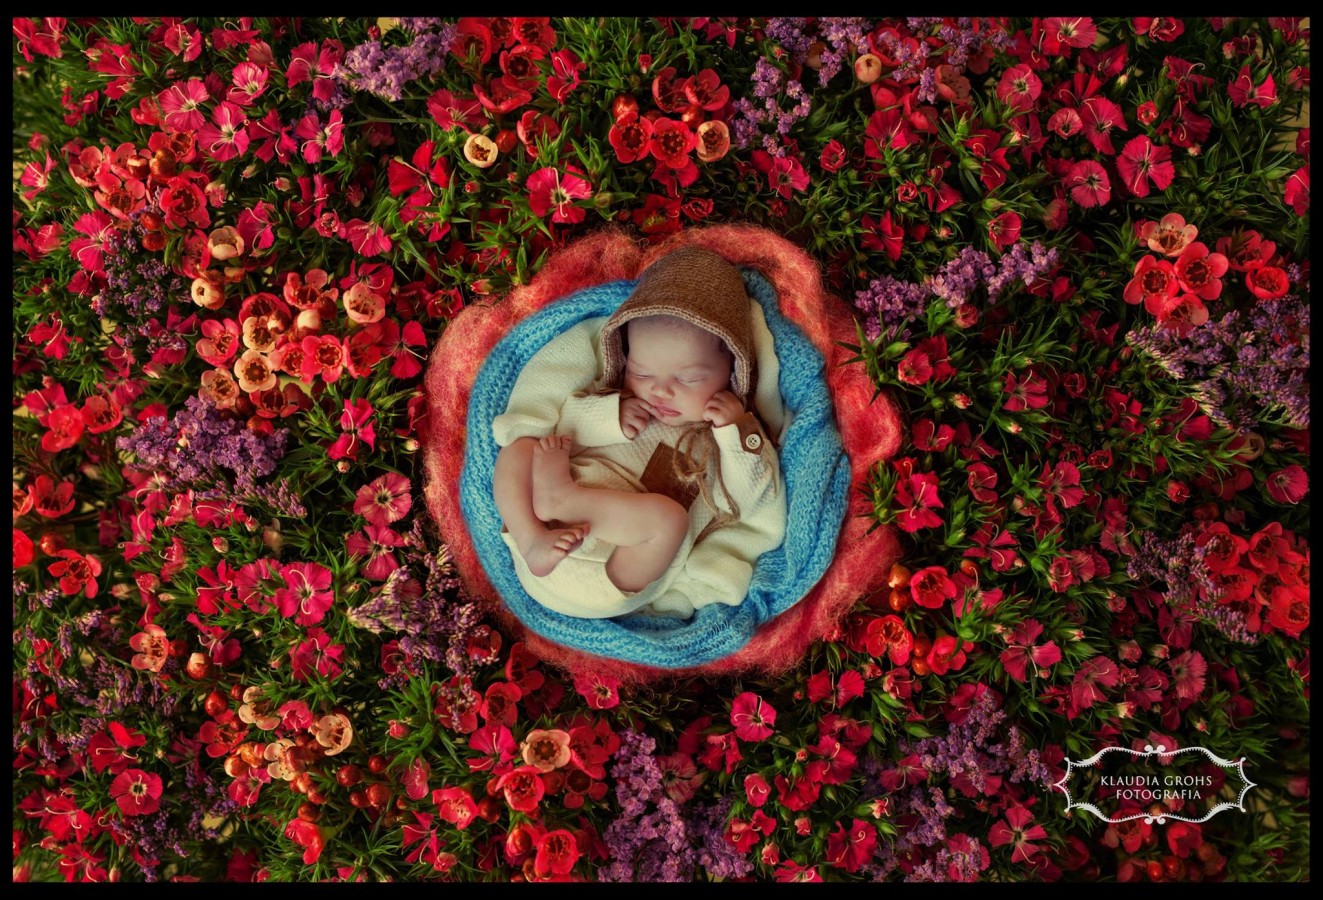 zdjęcia gdynia fotograf klaudia-grohs-fotografia portfolio zdjecia noworodkow sesje noworodkowe niemowlę